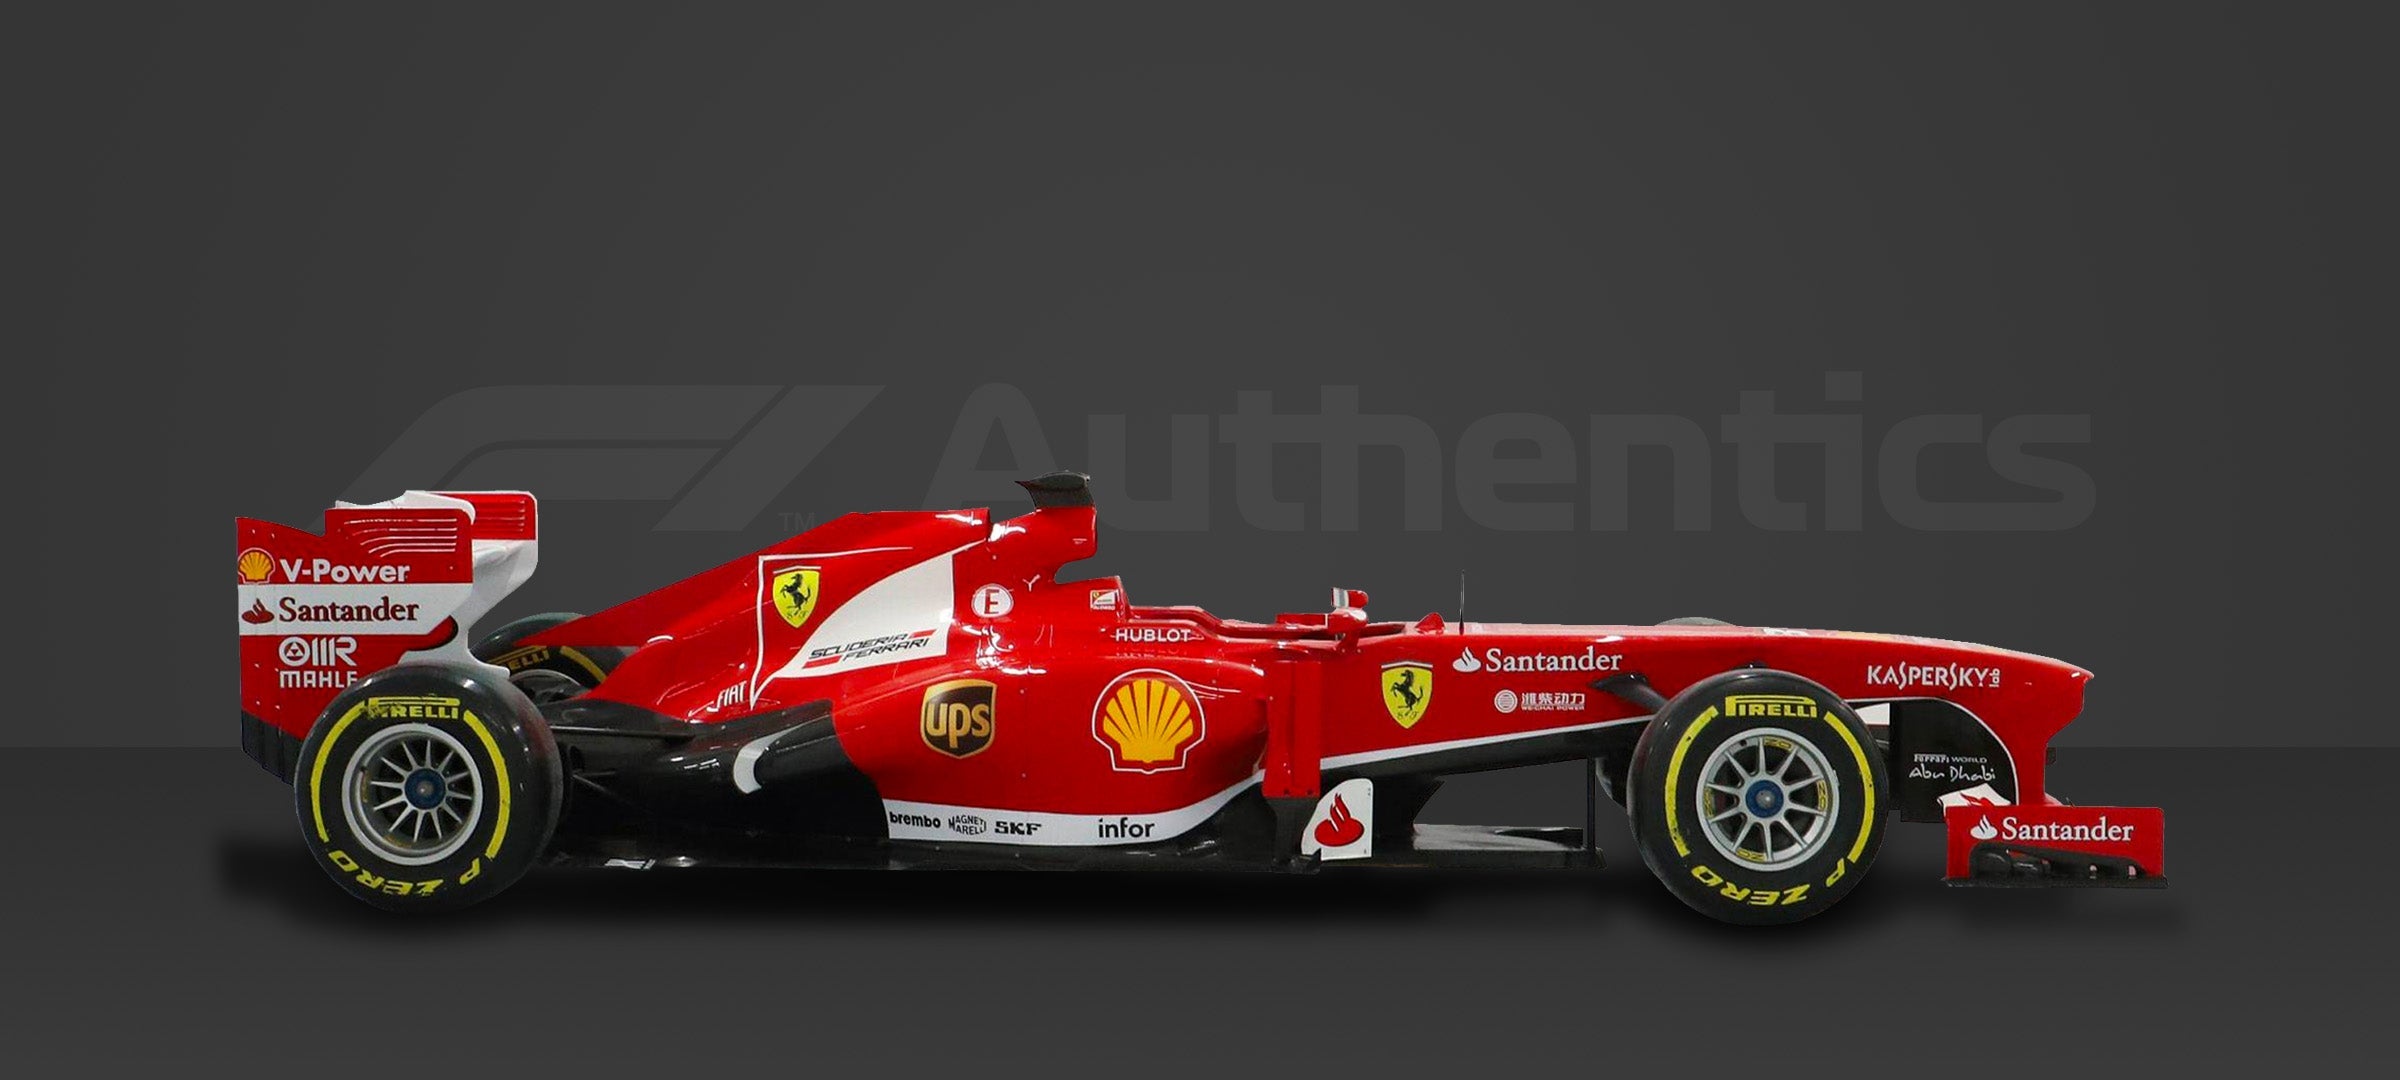 2013 Ferrari F138 Official Show Car